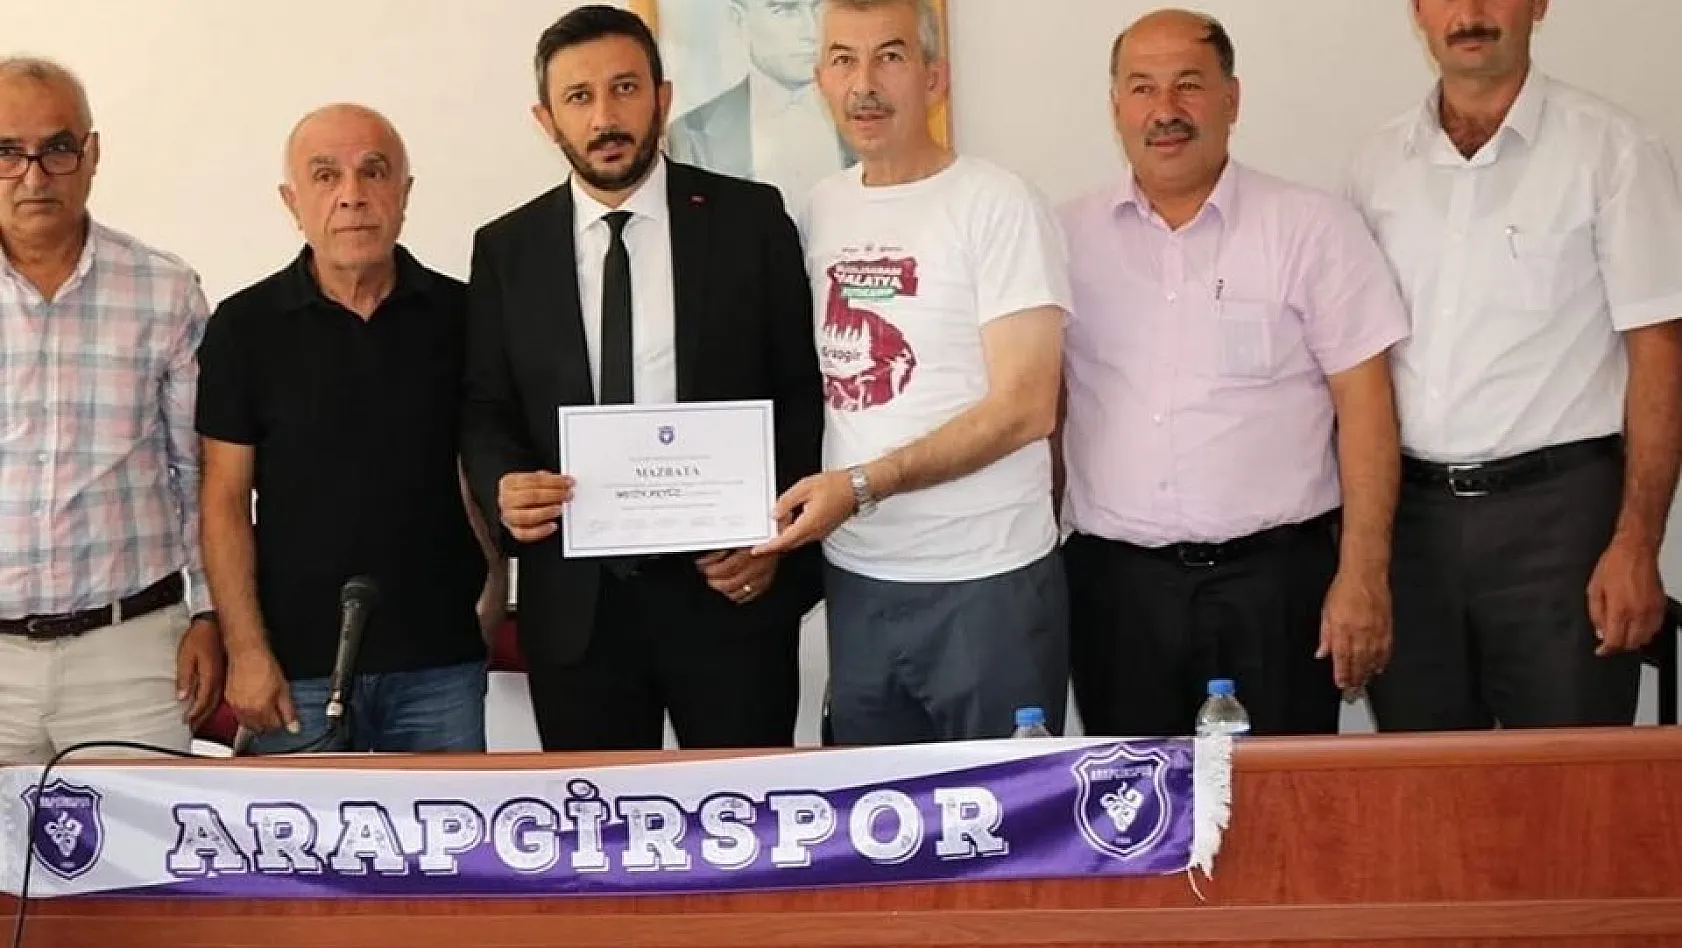 Aragirspor'un yeni başkanı Metin Akyüz oldu 